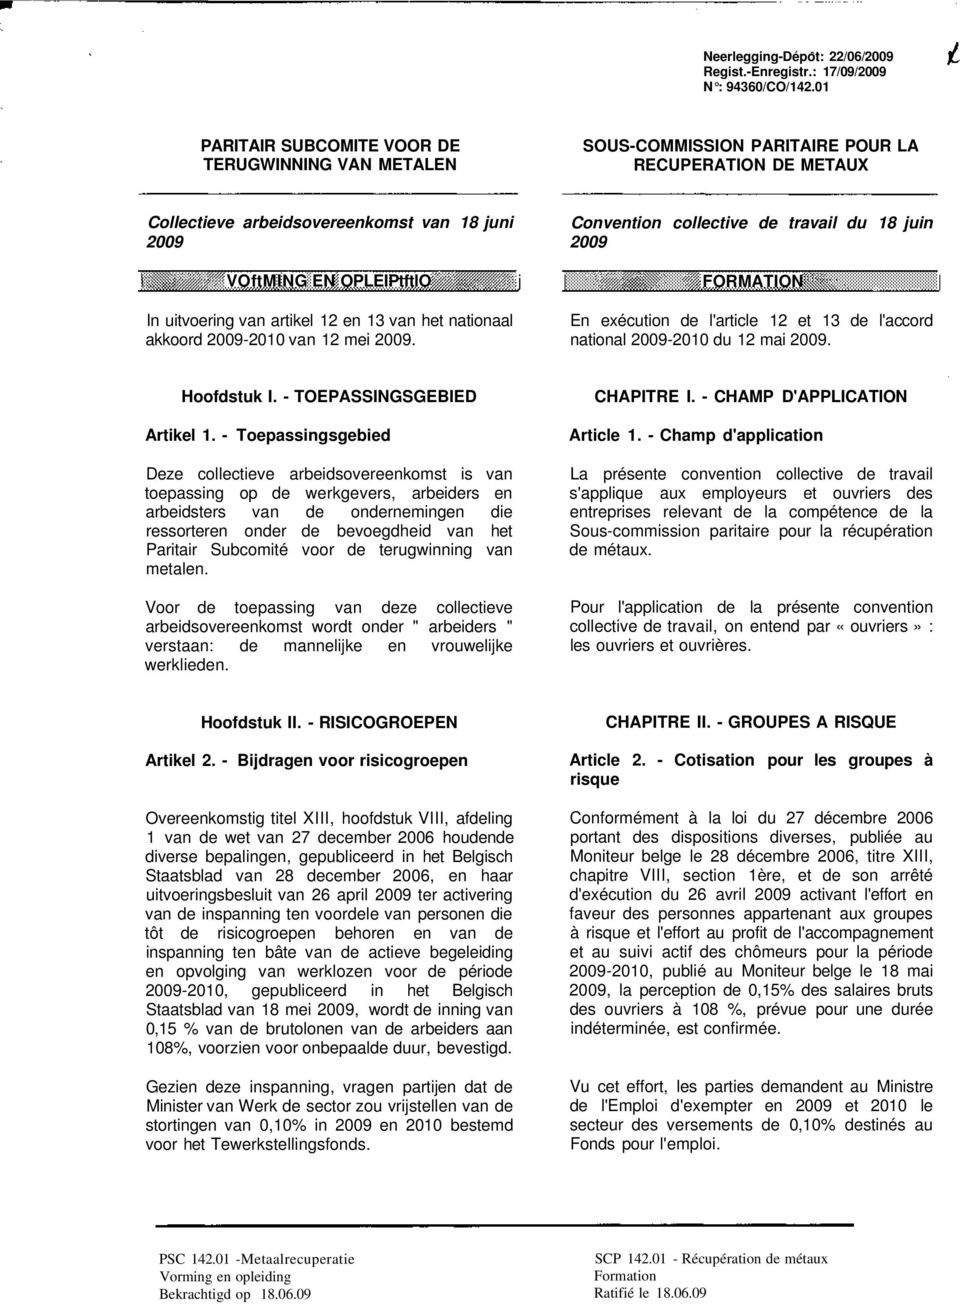 uitvoering van artikel 12 en 13 van het nationaal akkoord 2009-2010 van 12 mei 2009.